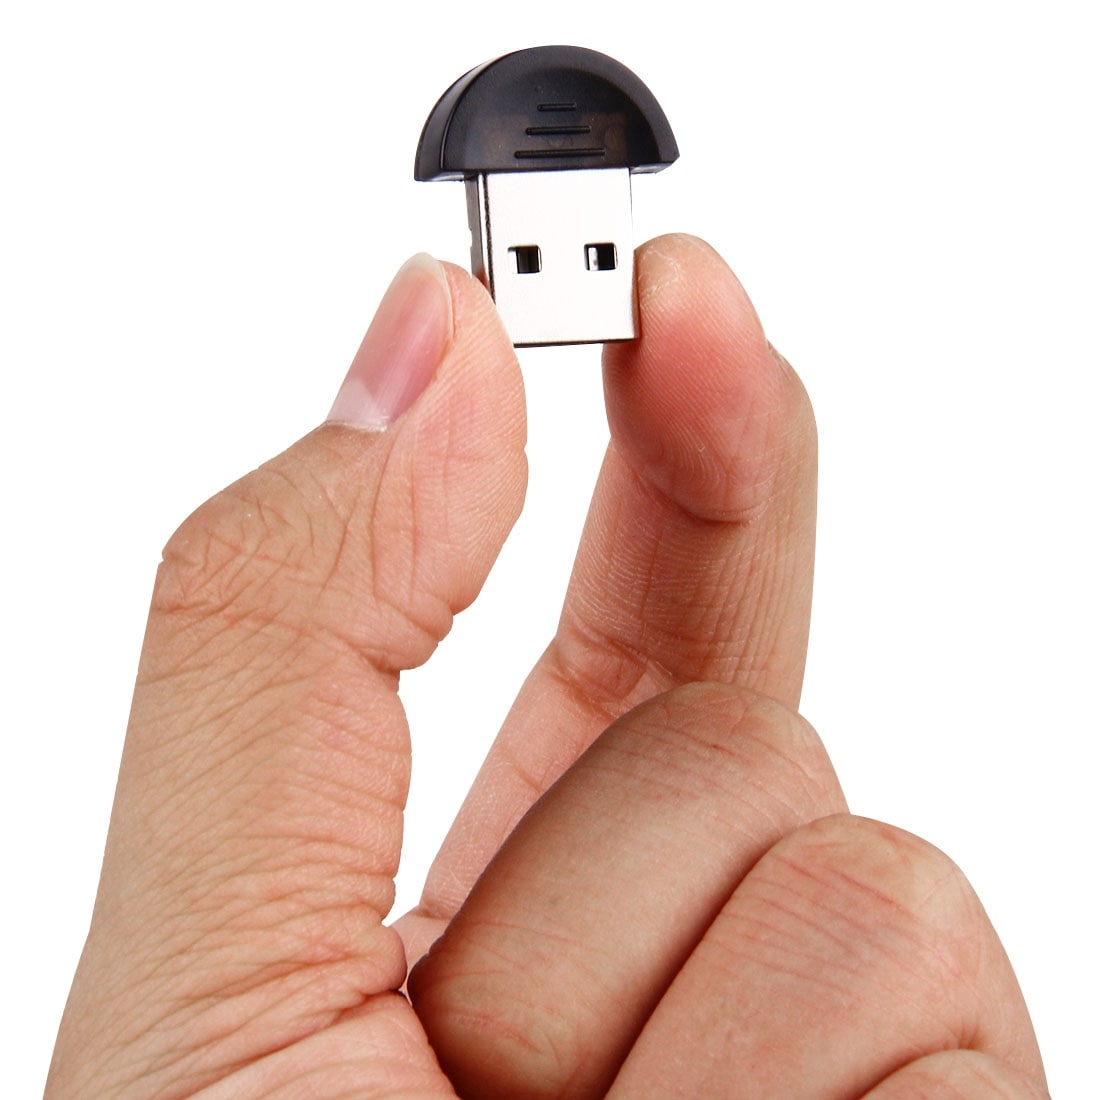 Bluetooth-sovitin USB:llä plug-&-play